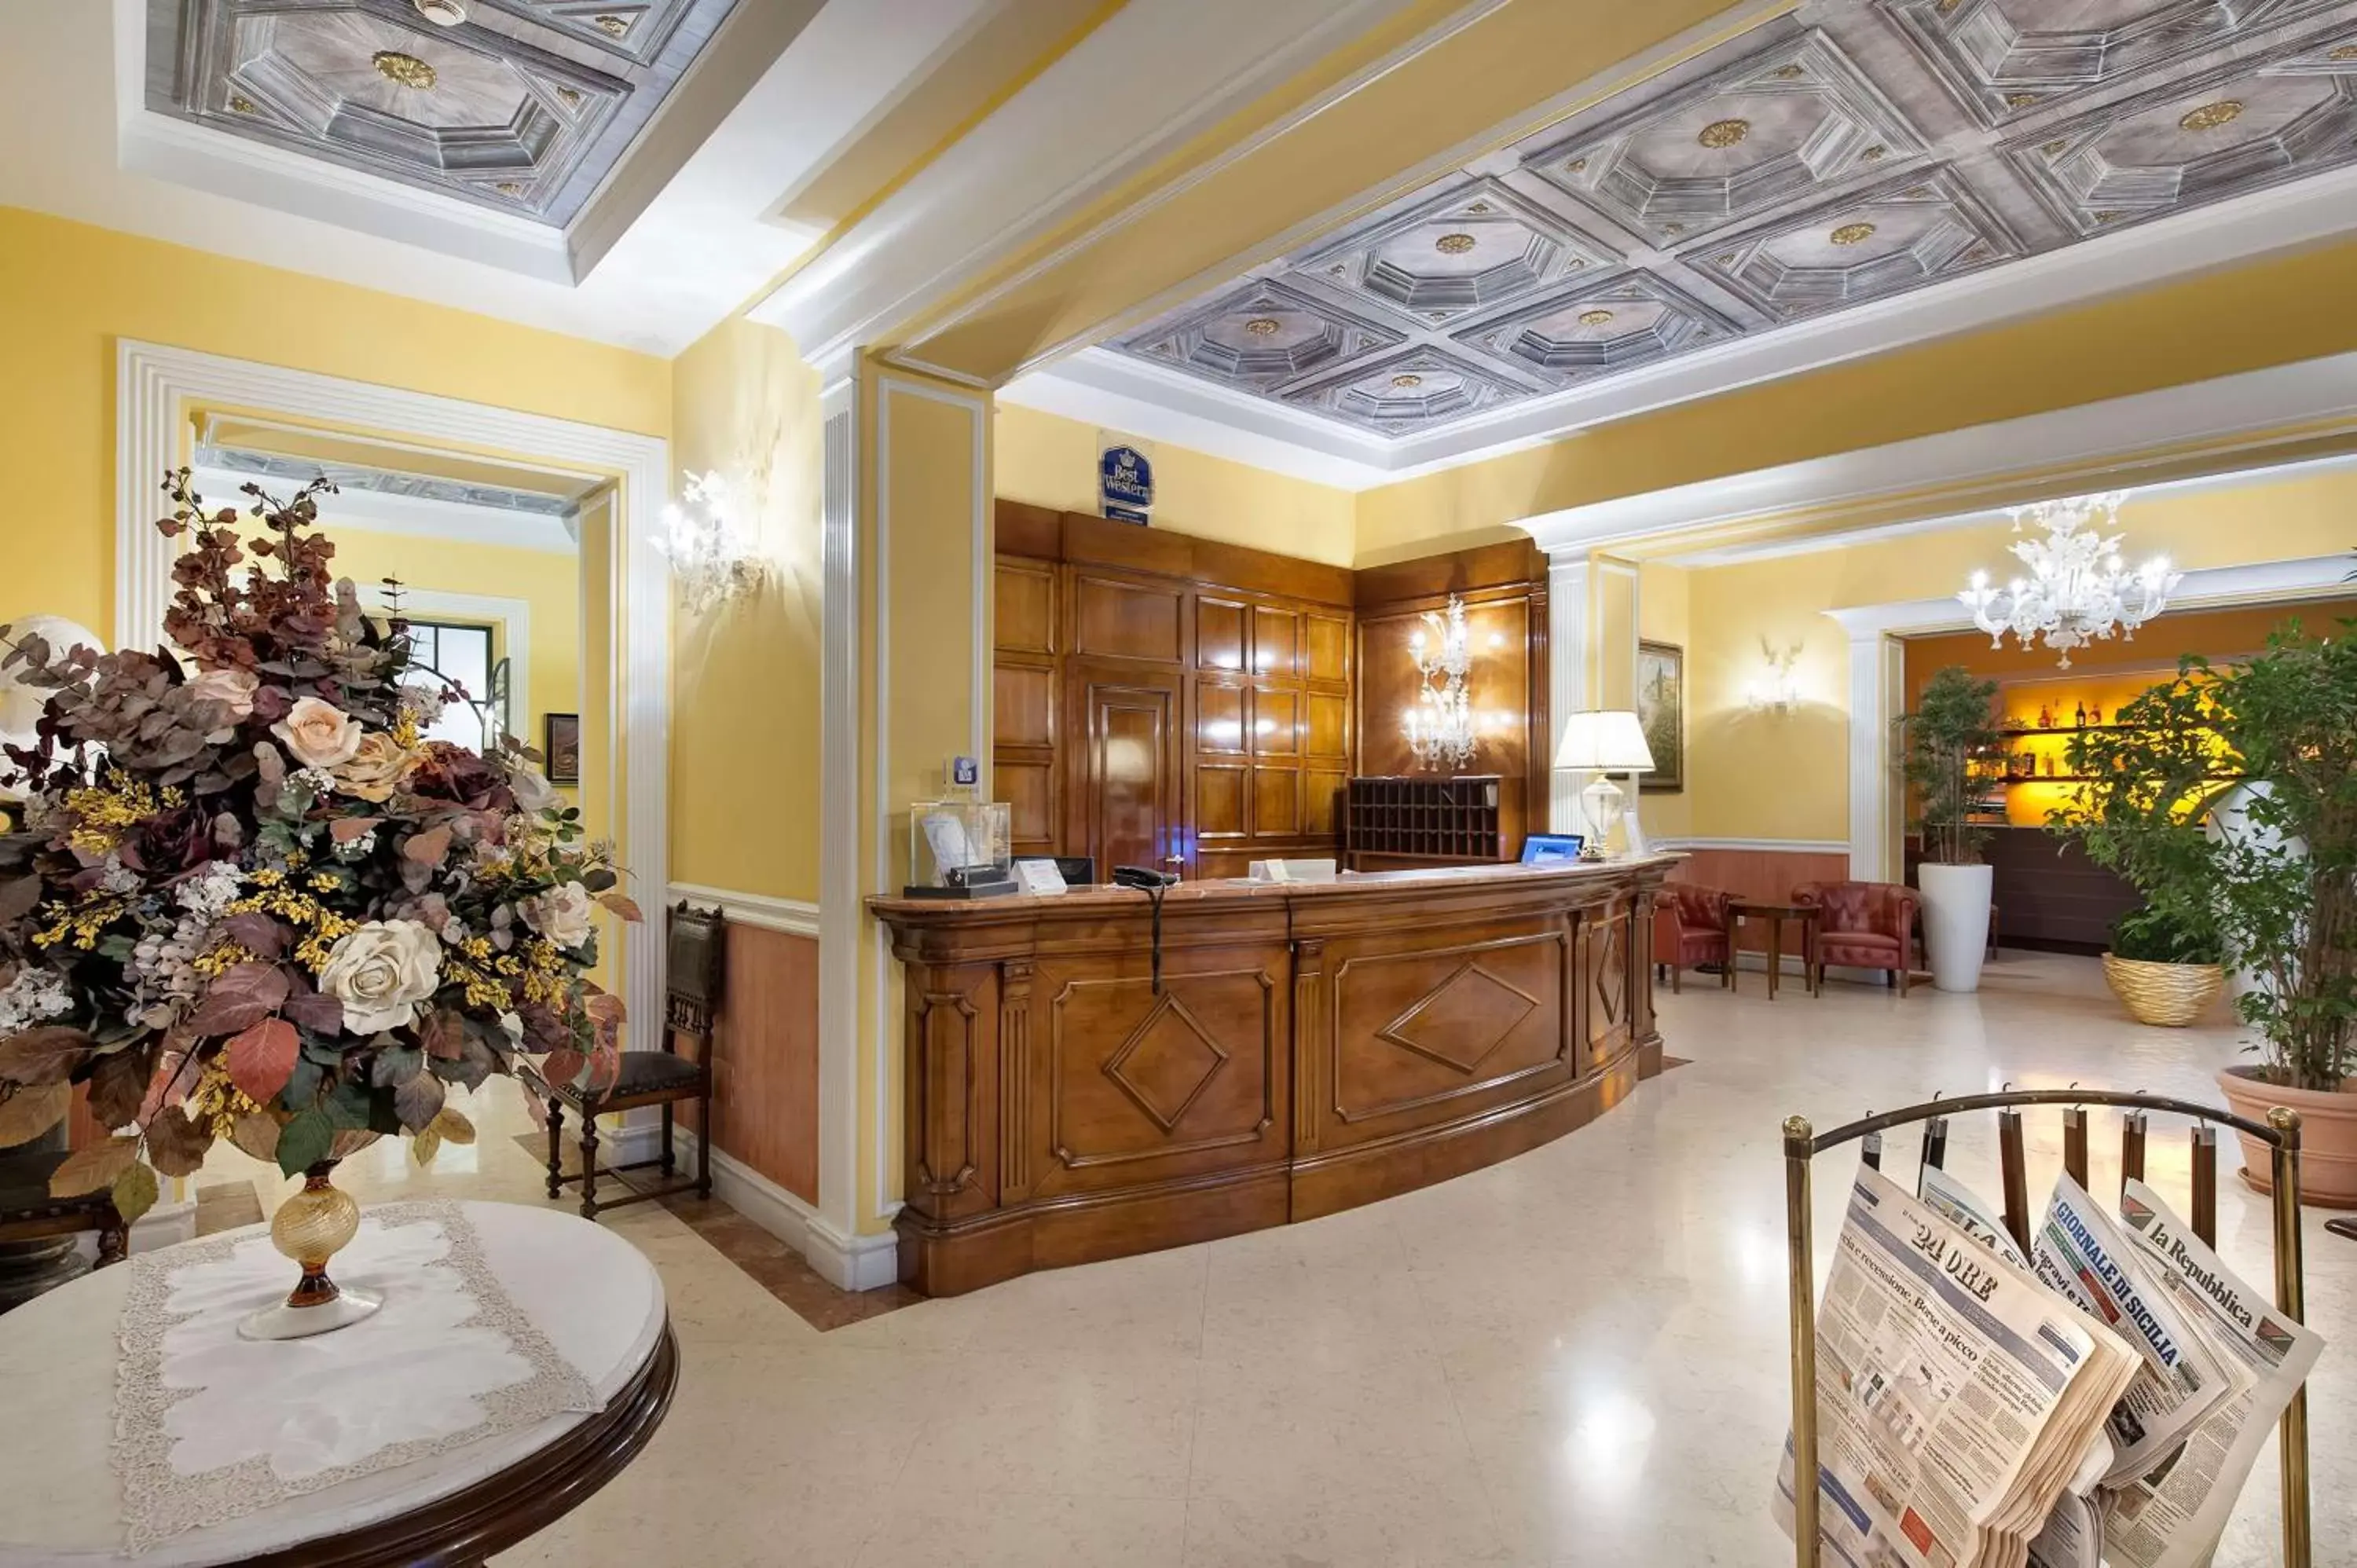 Lobby or reception, Lobby/Reception in Best Western Ai Cavalieri Hotel